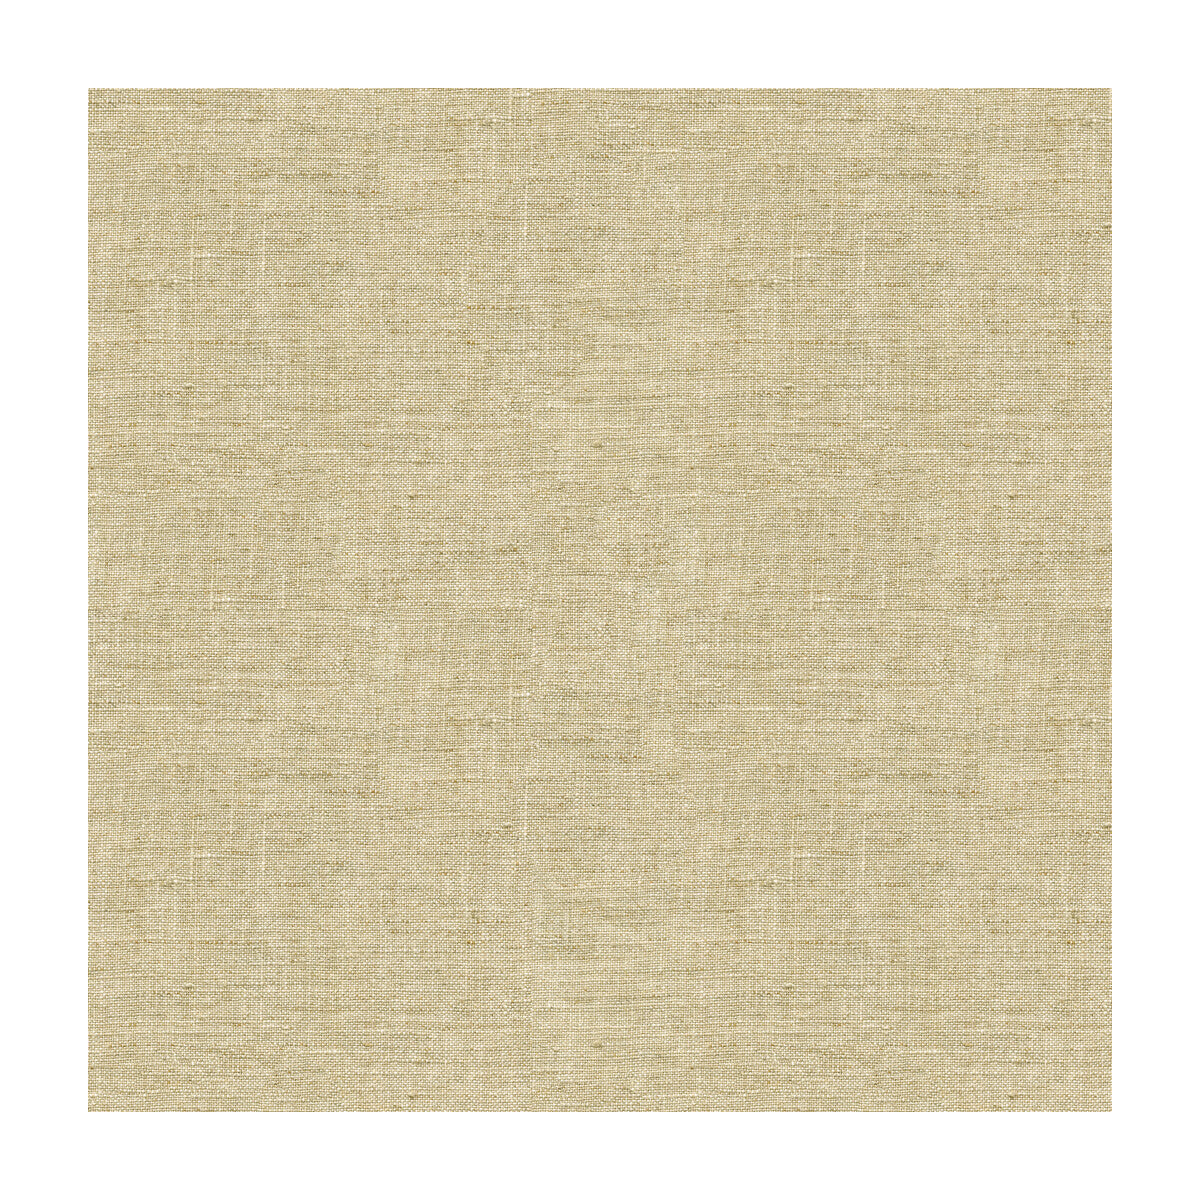 Kravet Basics fabric in 4058-16 color - pattern 4058.16.0 - by Kravet Basics